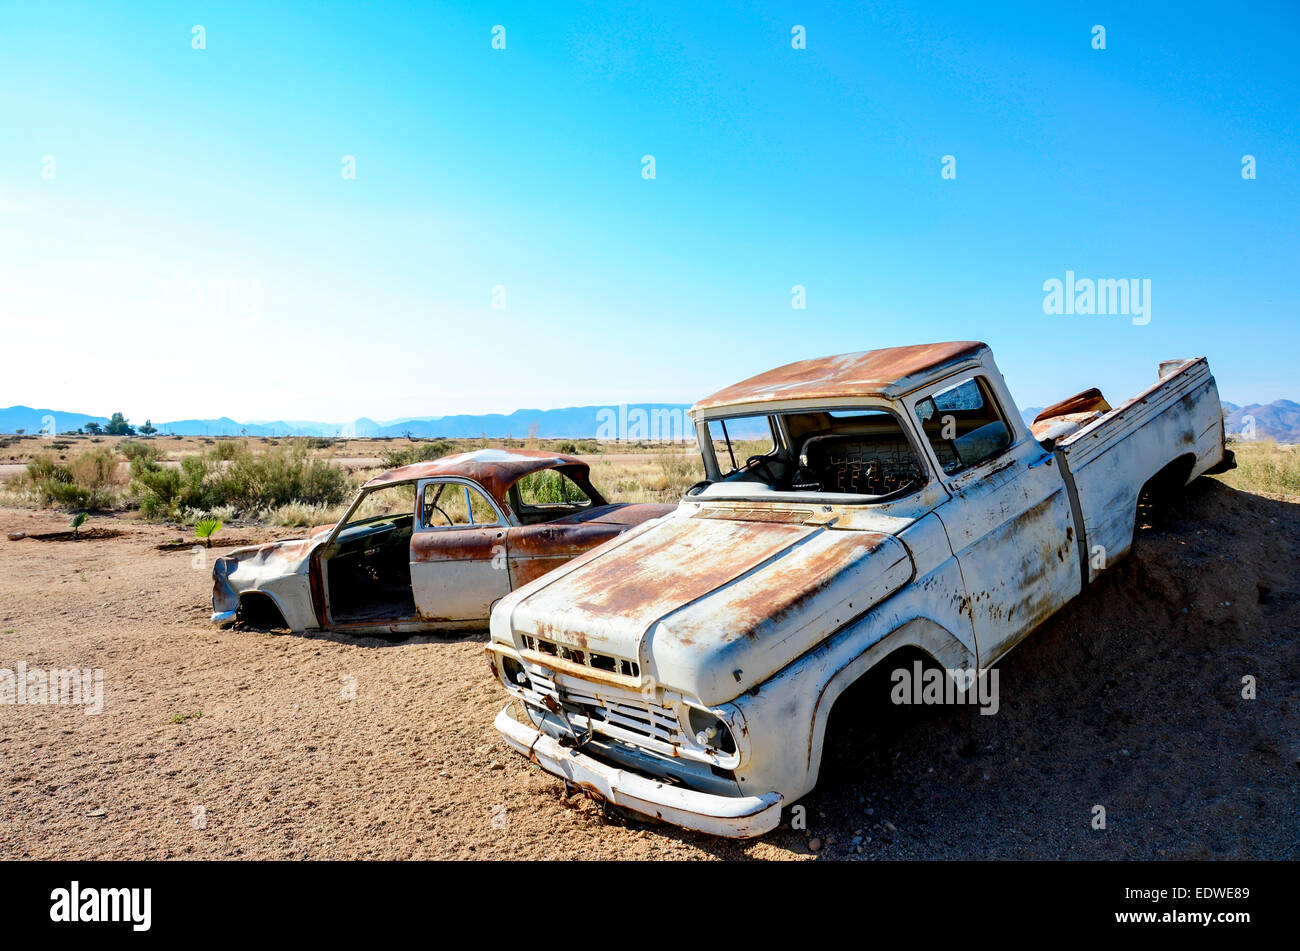 Abandoned car wrecks in the Namibian desert Stock Photo